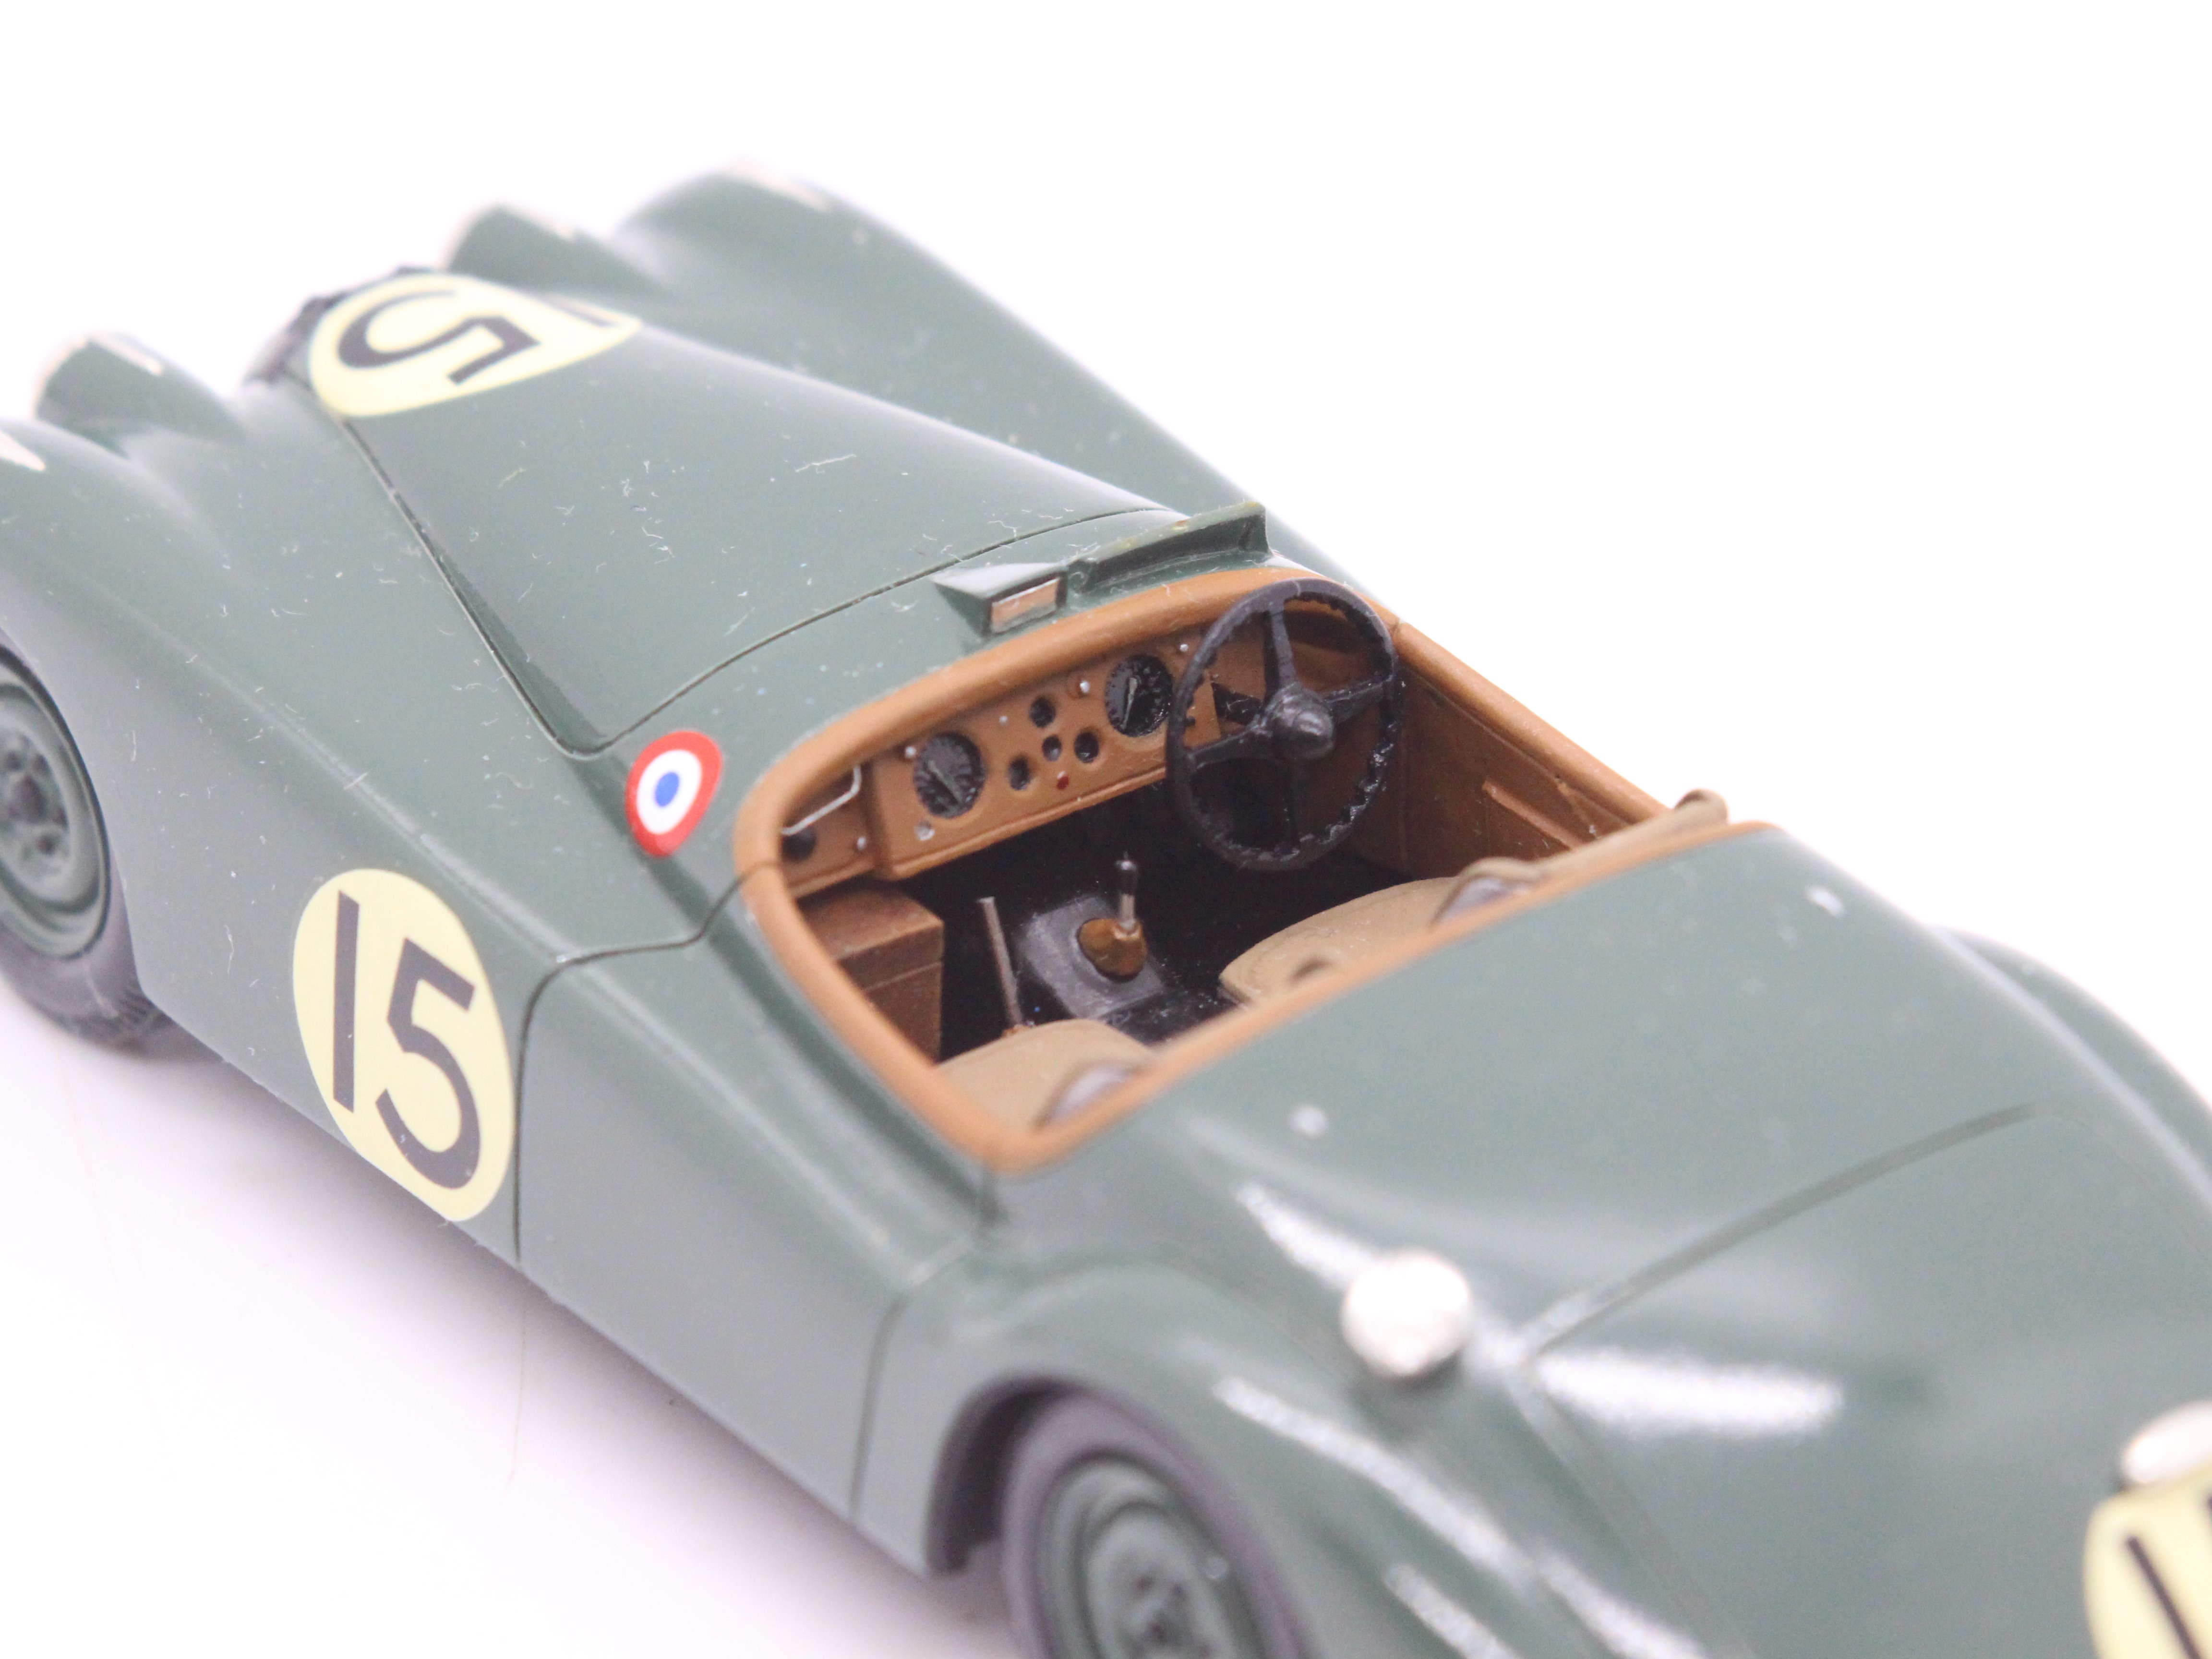 MPH Models, Tim Dyke - A boxed MPH Models #710 Jaguar XK120 Le Mans 1950. - Image 4 of 13